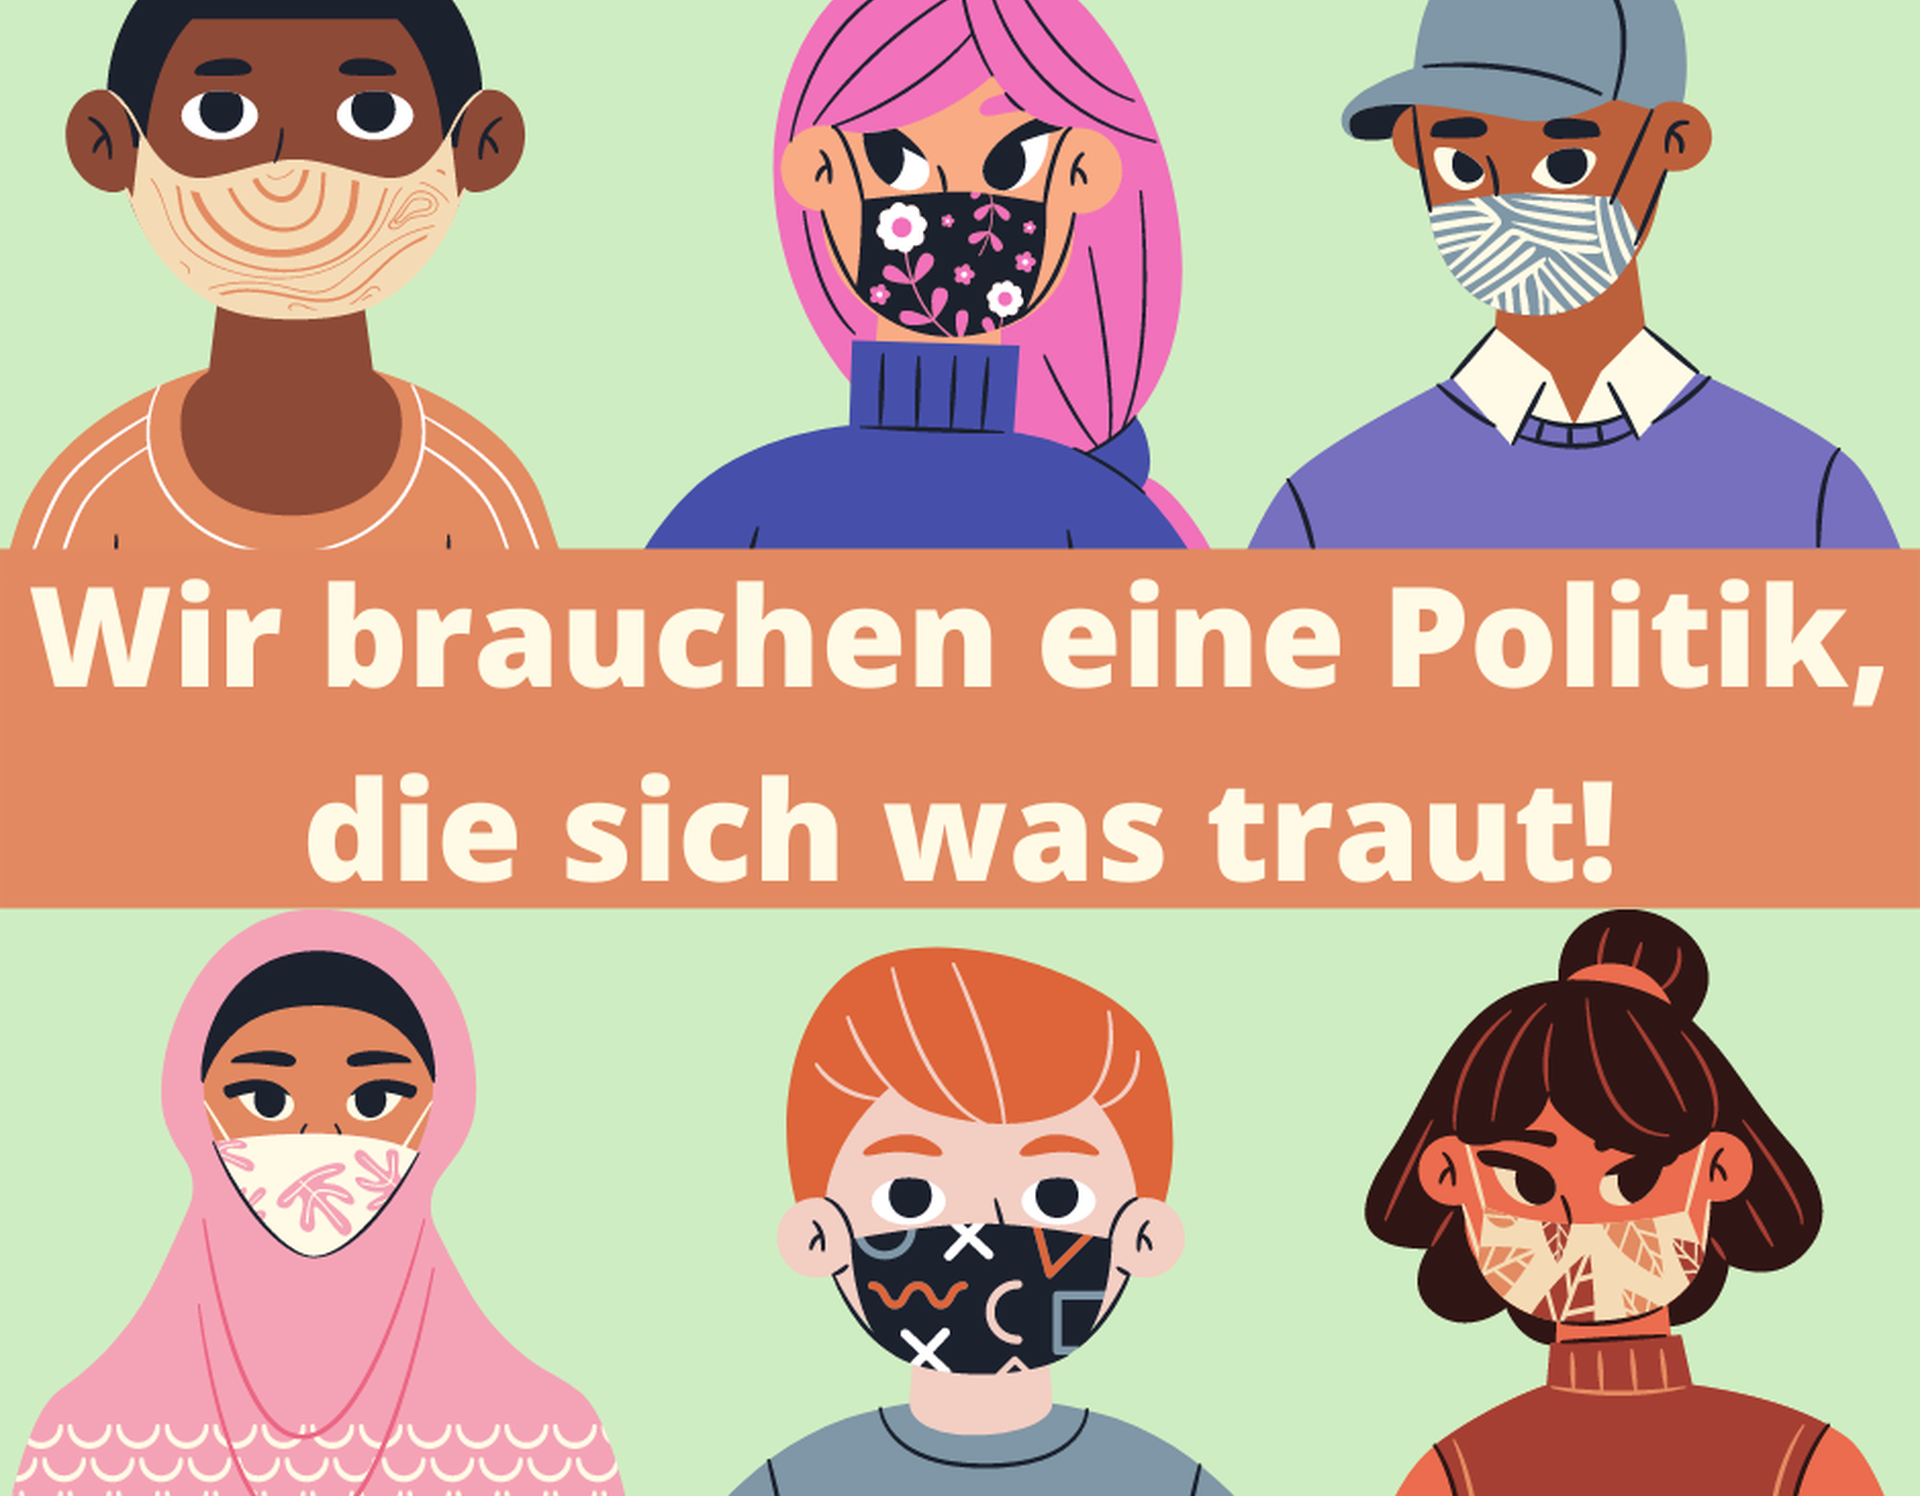 6 Zeichnungen von jungen Menschen mit Gesichtsmaske. Text: "Wir brauchen eine Politik, die sich was traut!"